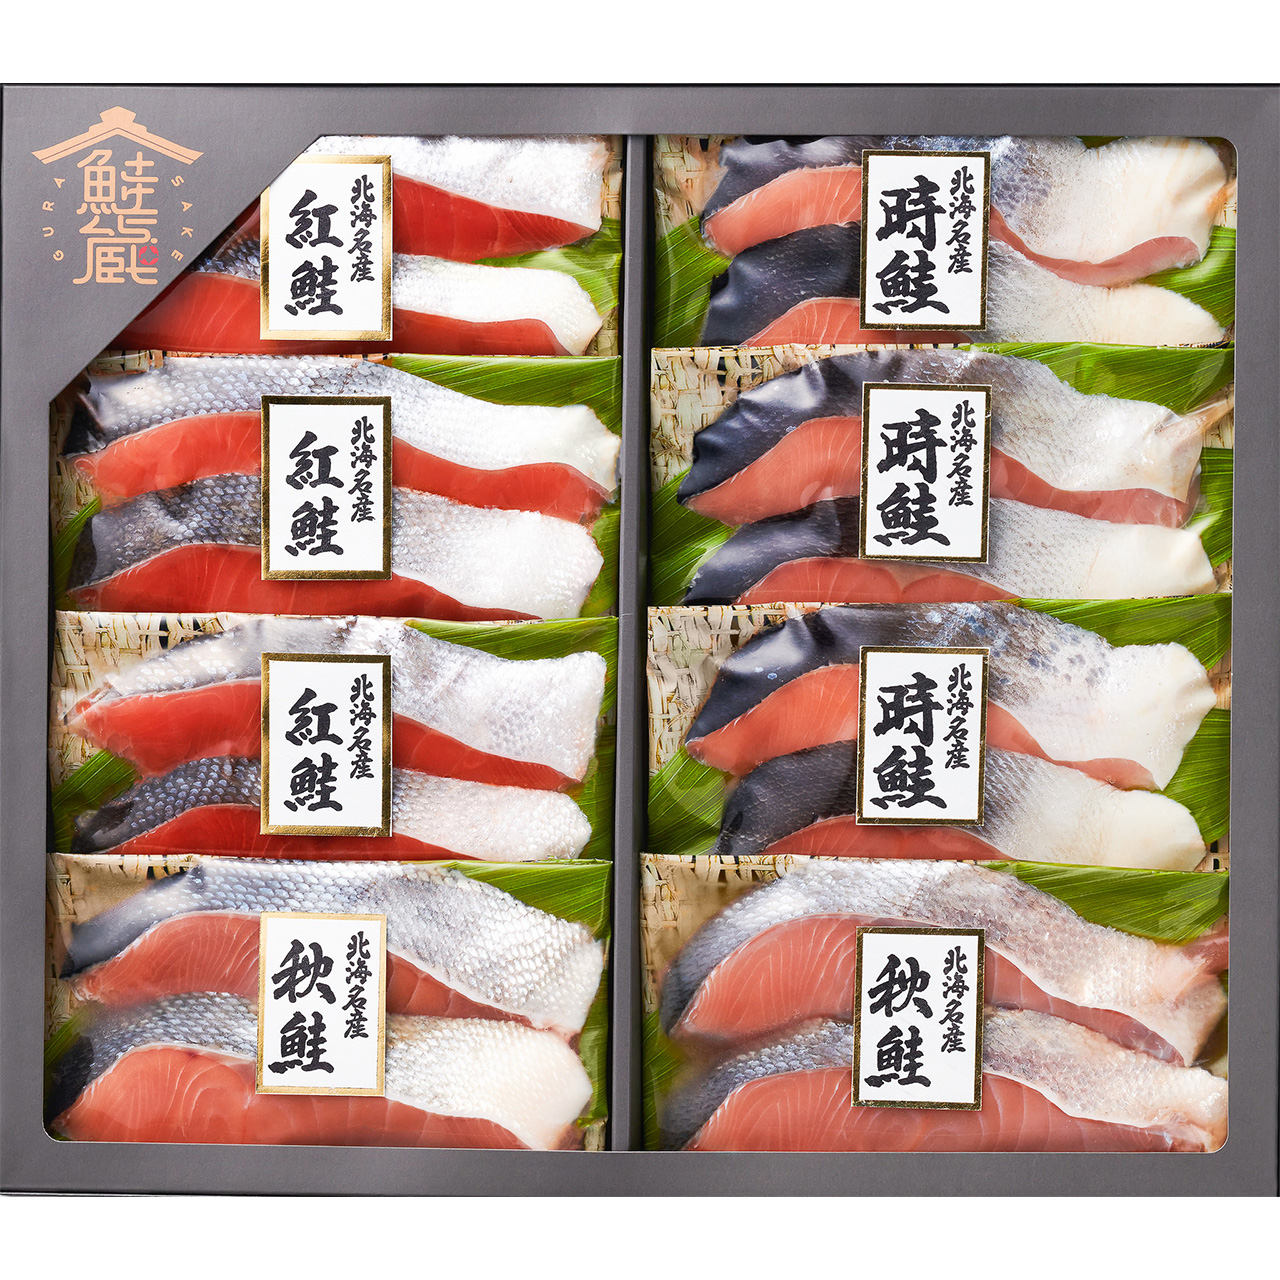 香煎鮭魚 by ️Jami👪 - 愛料理